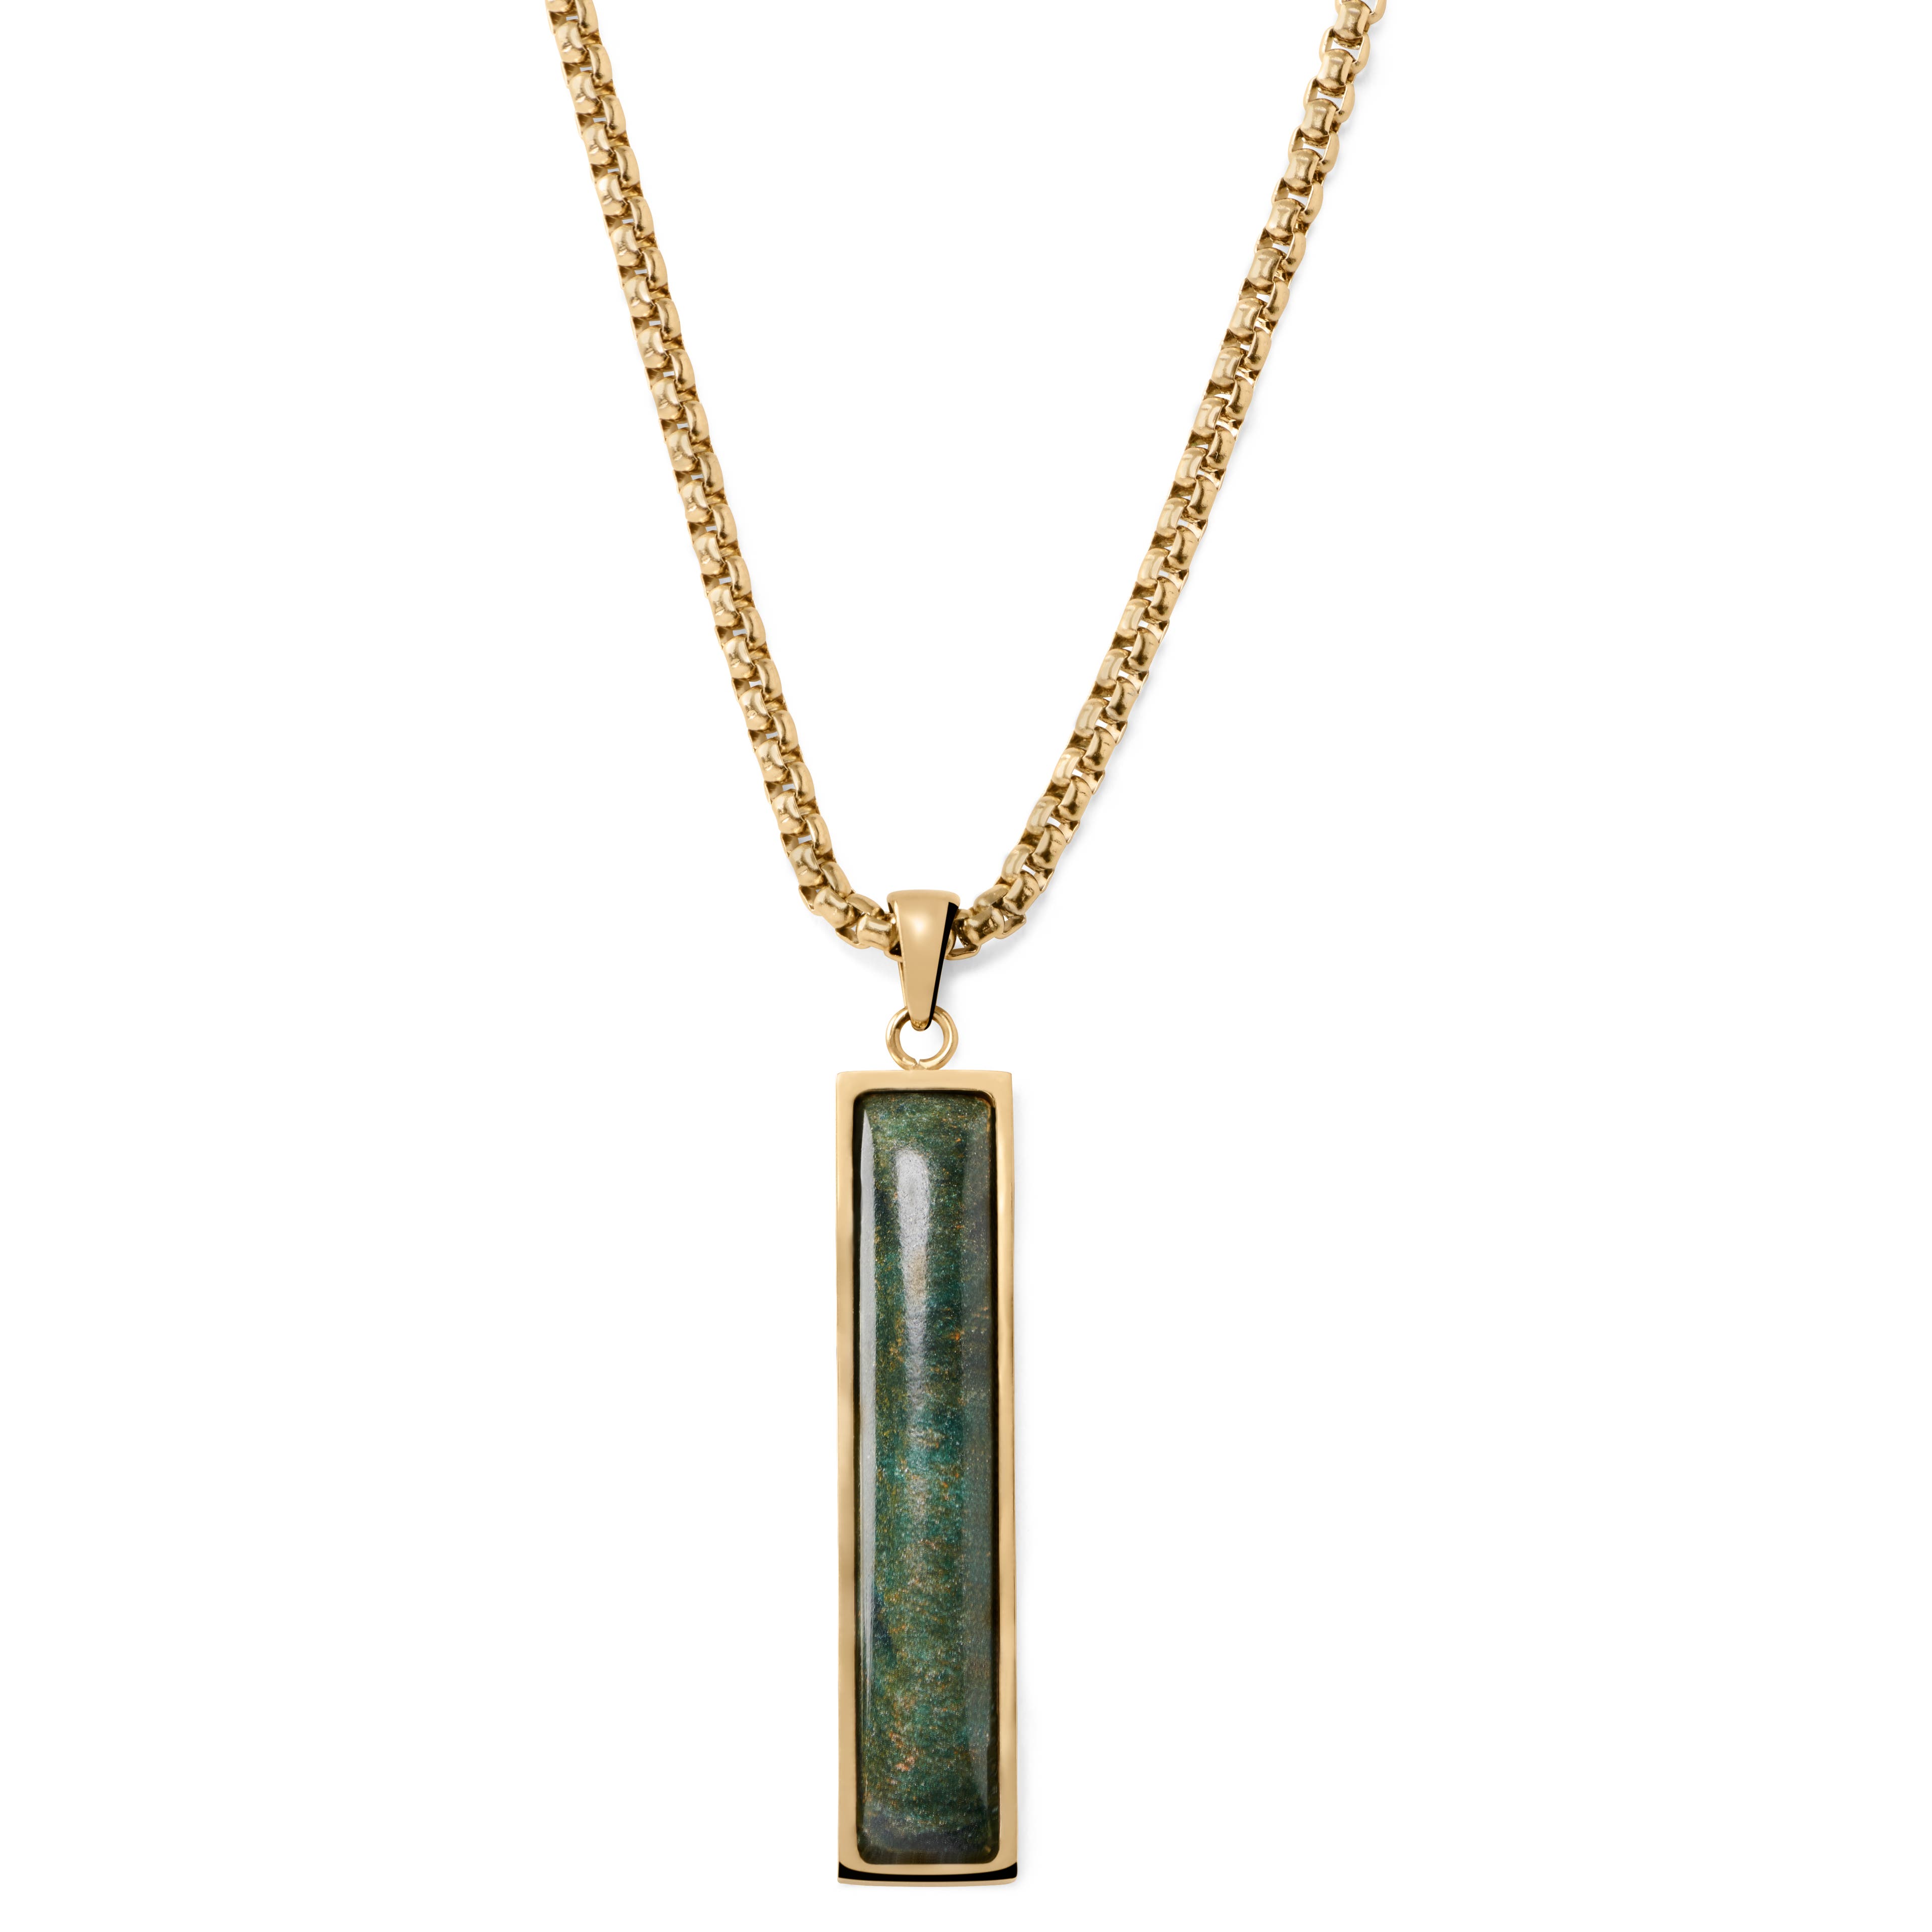 Orisun | Gold-Tone & Green African Jade Box Chain Necklace